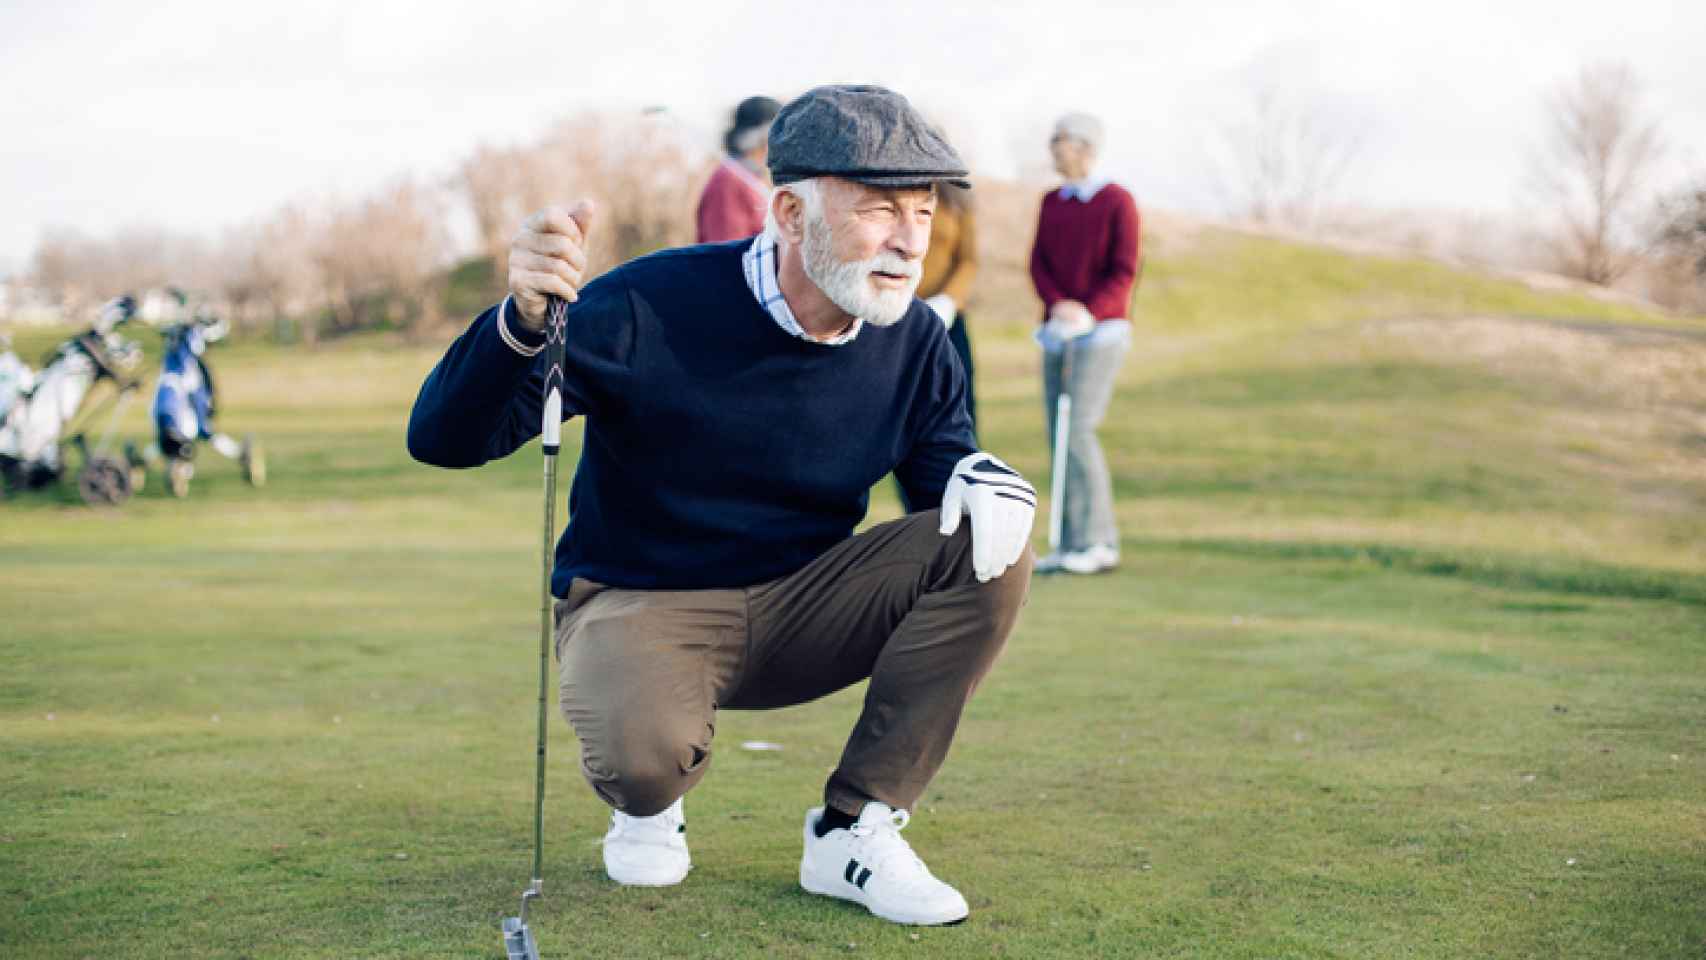 Unos jubilados jugando al golf.